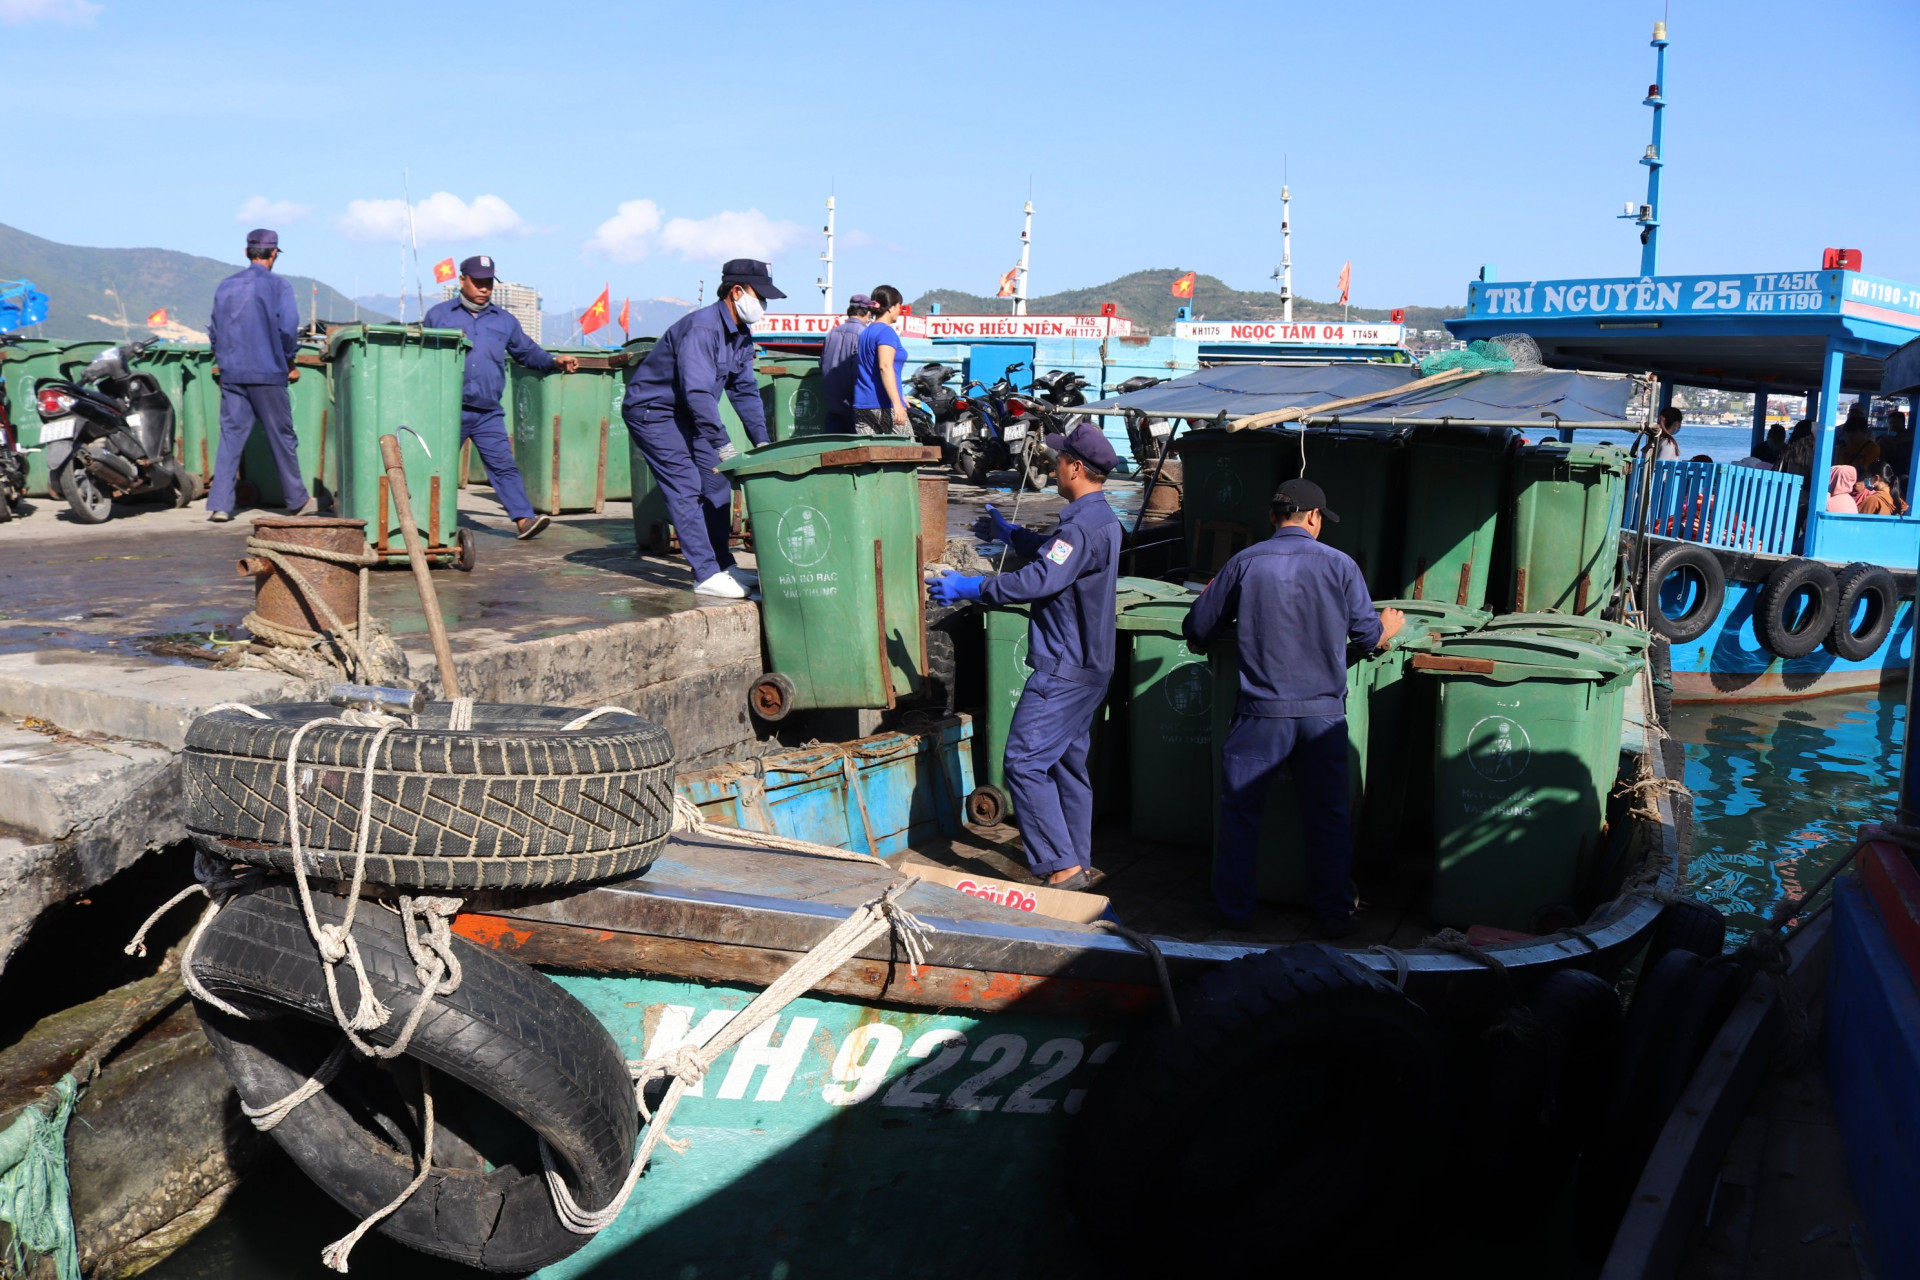 Công nhân vận chuyển thùng rác từ đảo Trí Nguyên lên thuyền.